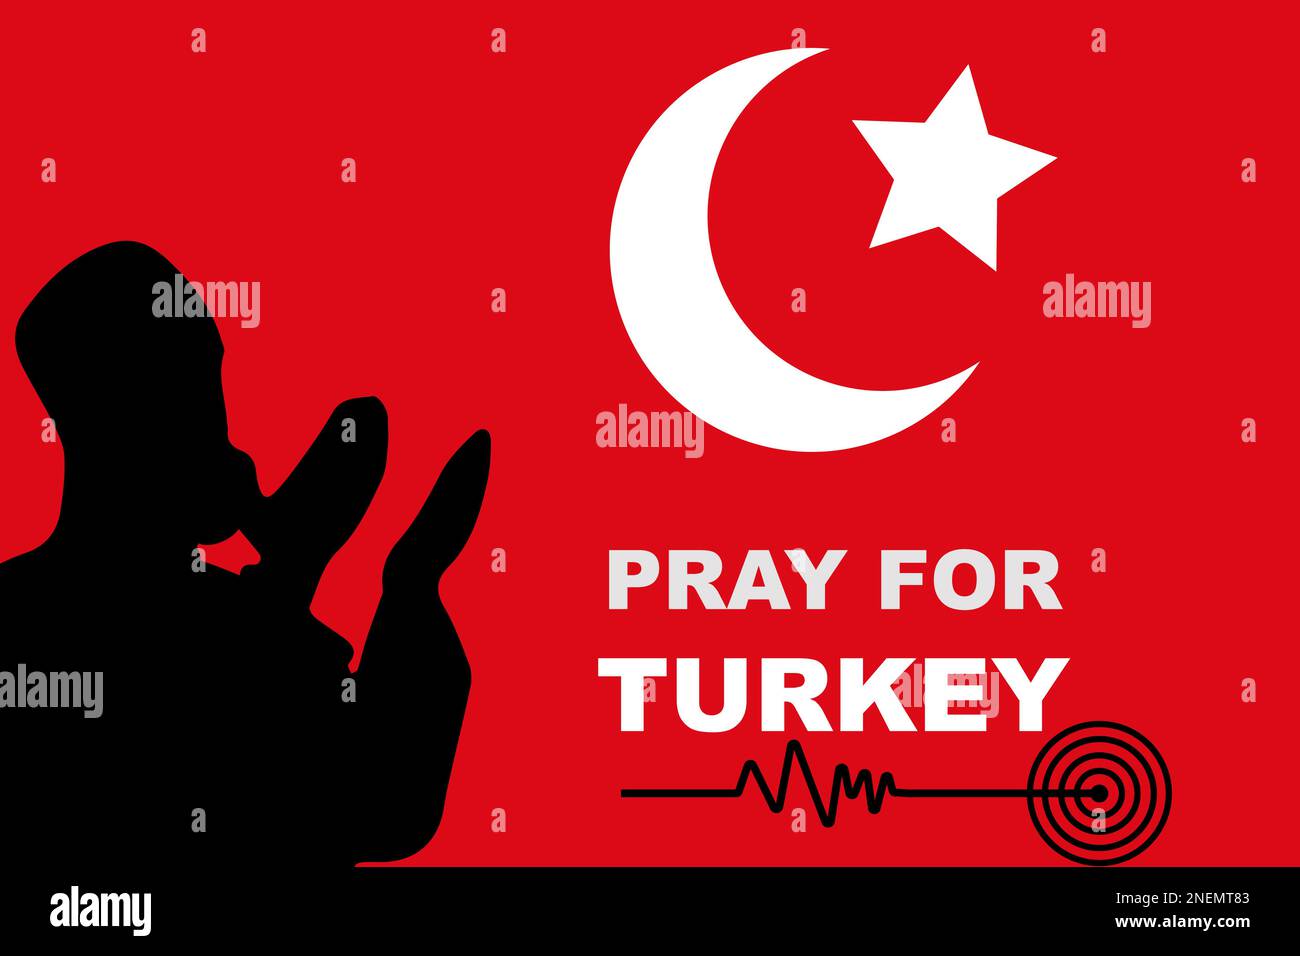 Bete für die Türkei, die vom Erdbeben betroffen ist. Truthahnflagge mit dua und Erdbeben Richter Waage winkt. Ein Erdbeben traf zwei Länder gleichzeitig. Stock Vektor